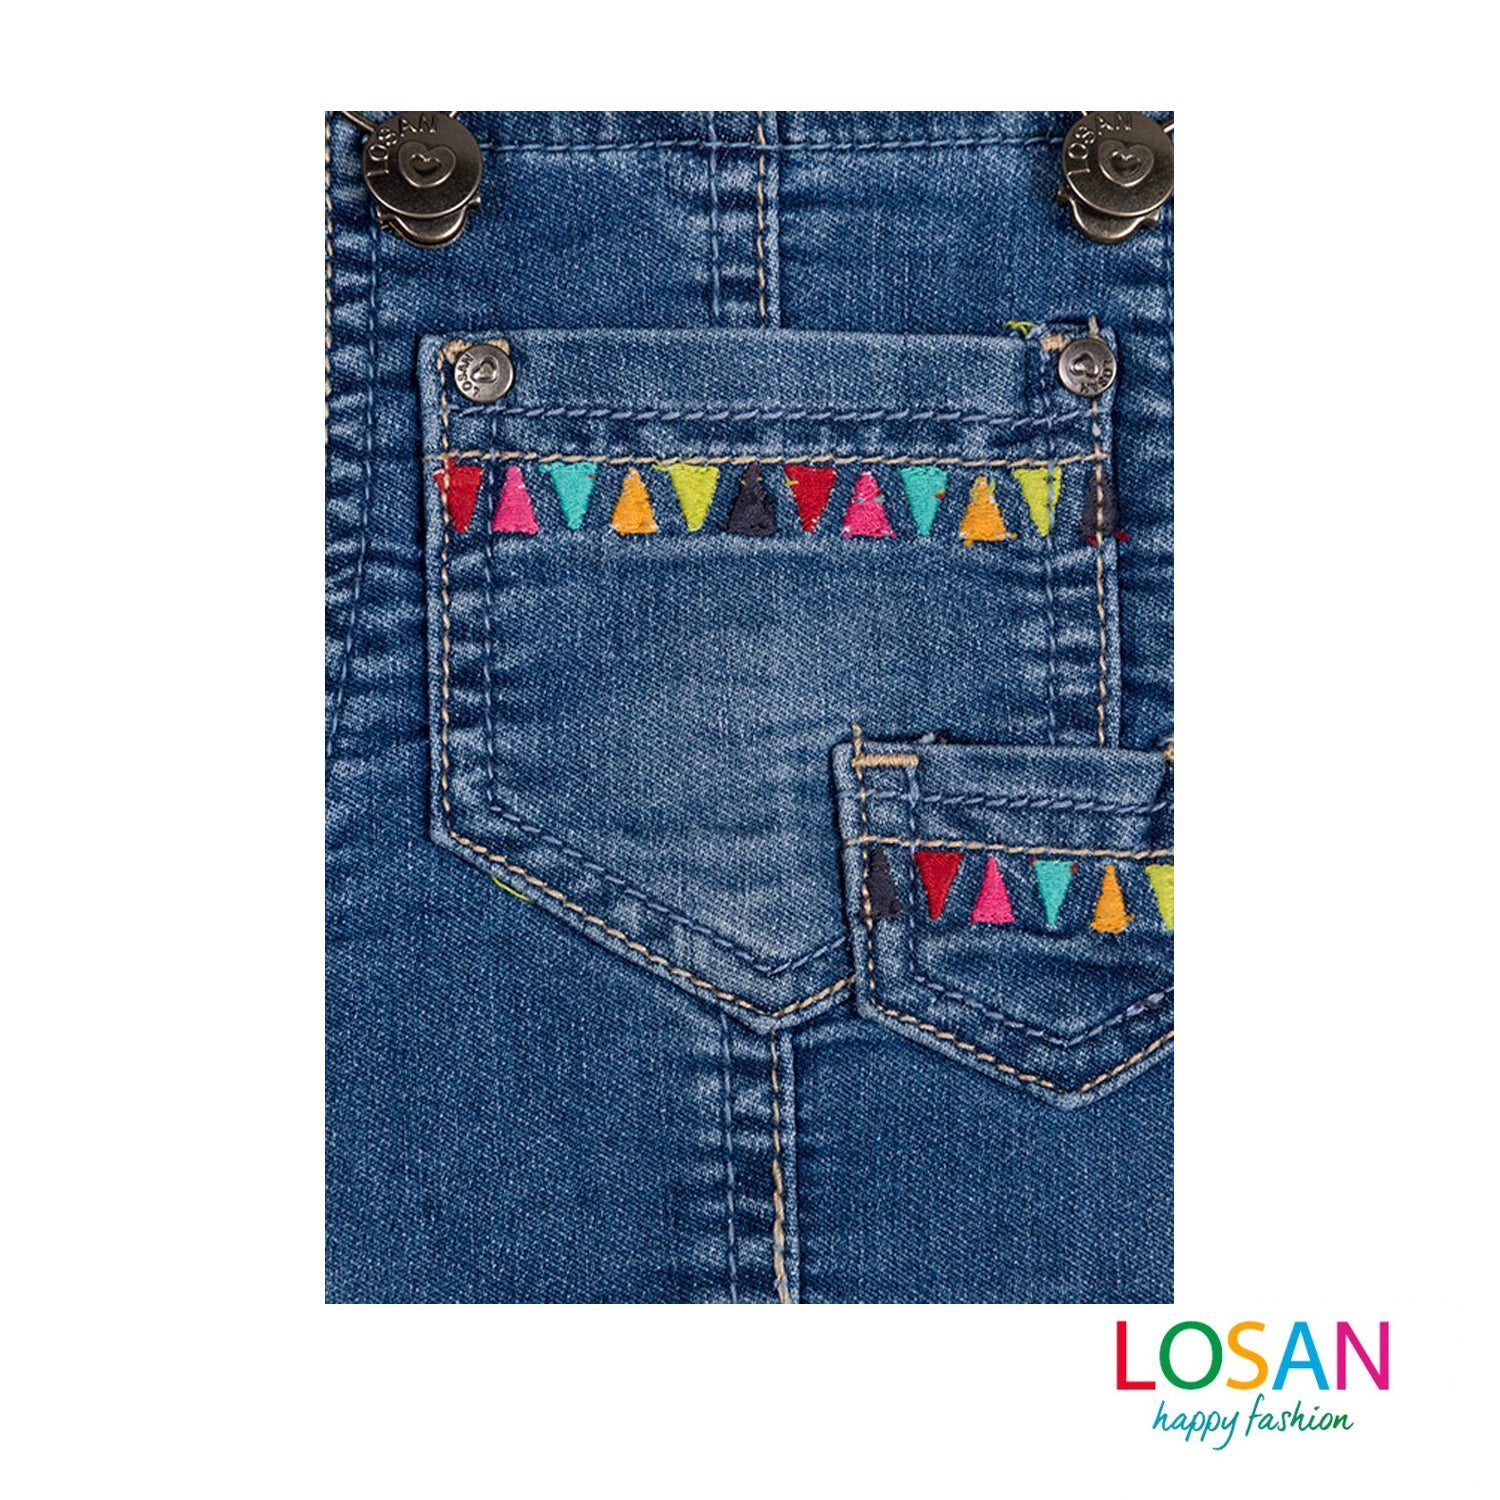 Losan - Salopette di Jeans Stile Etnico Bambina Junior